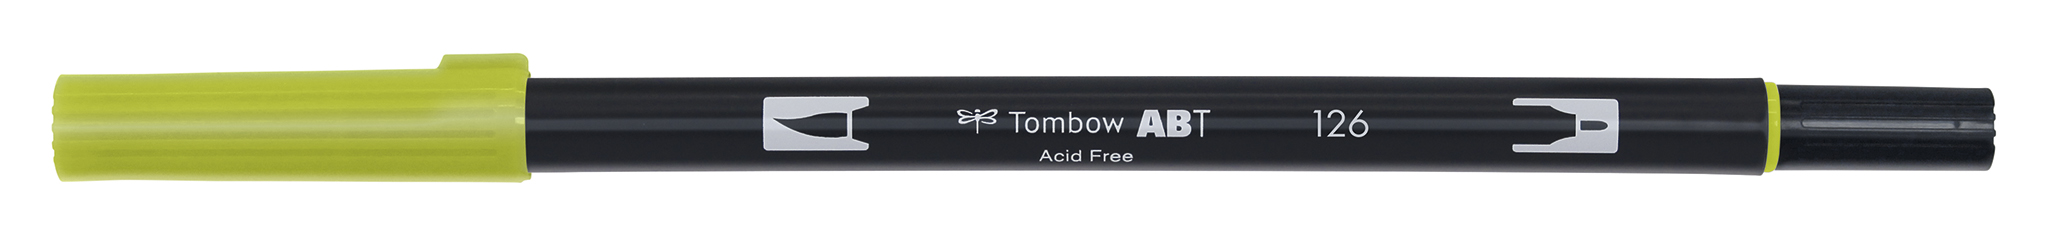 Tombow Art Brush Pen, light olive